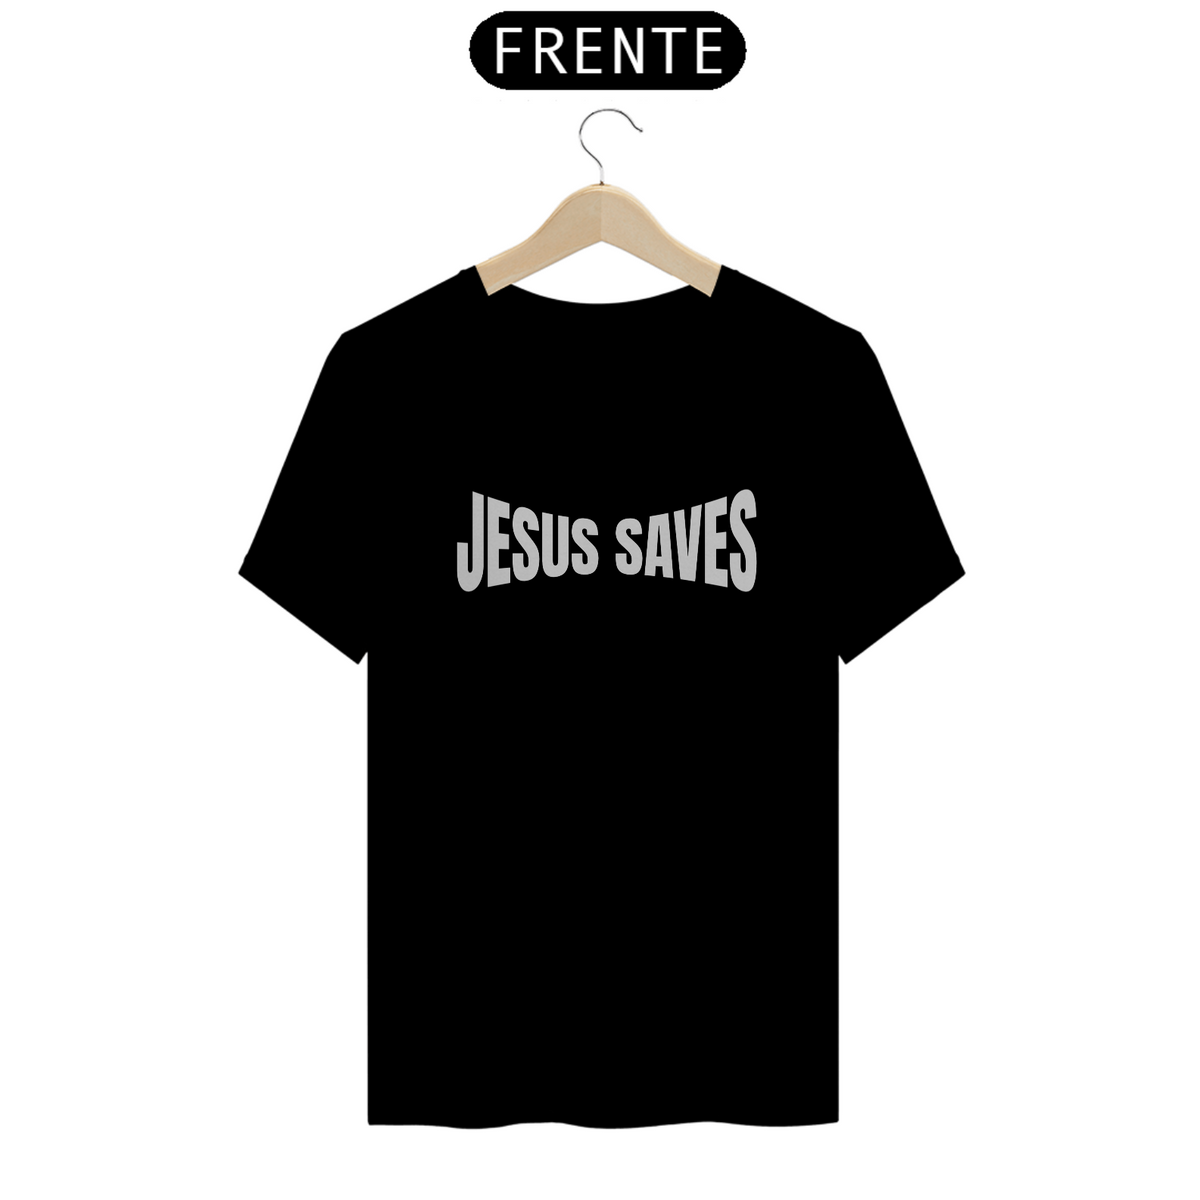 Nome do produto: T-SHIRT JESUS SAVES